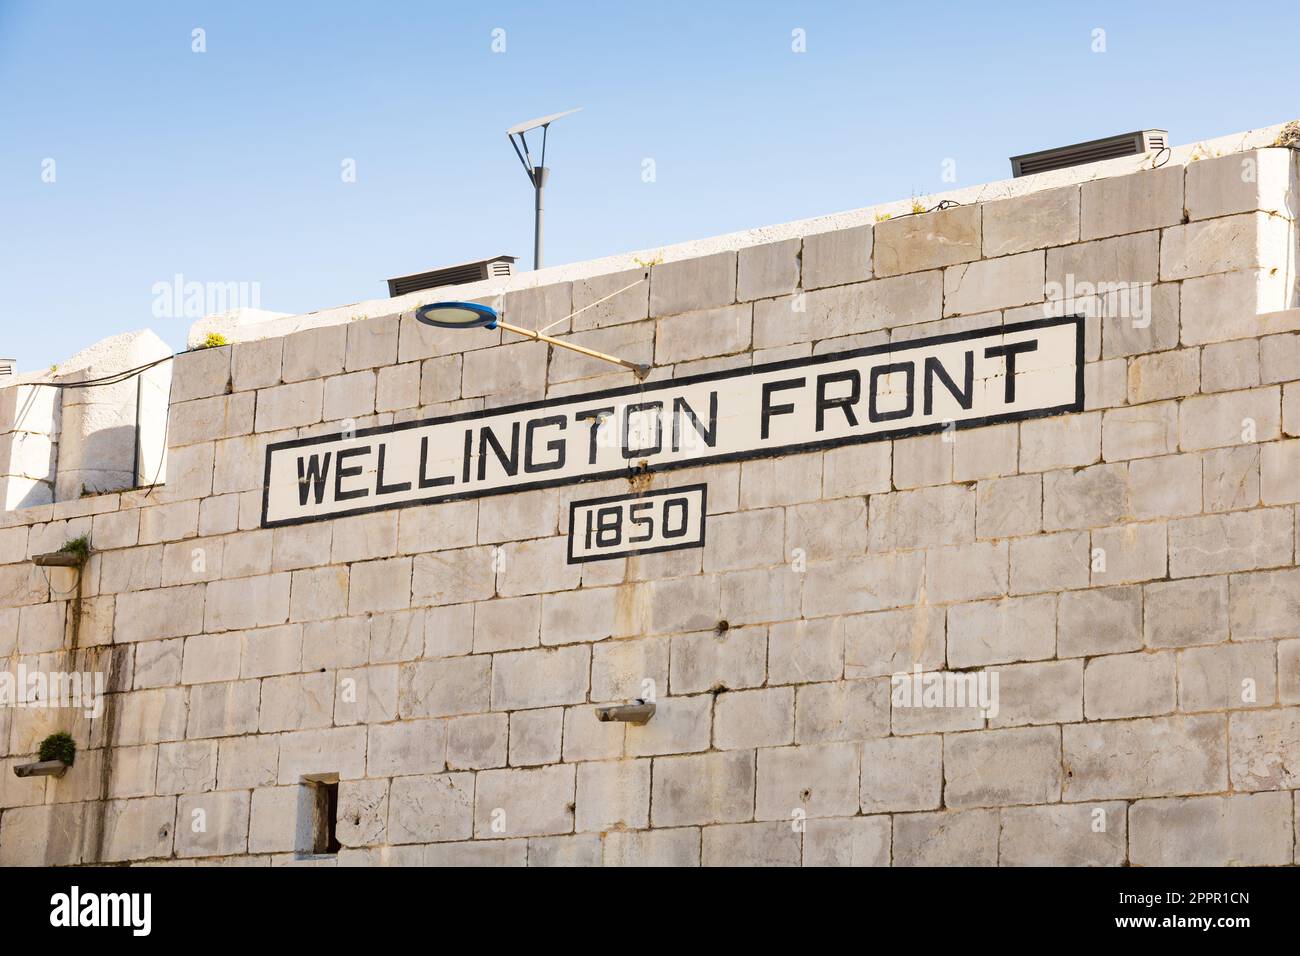 Wellington Front on the Line Curtain Wall, il territorio britannico d'oltremare di Gibilterra, la Rocca di Gibilterra sulla penisola iberica. Foto Stock